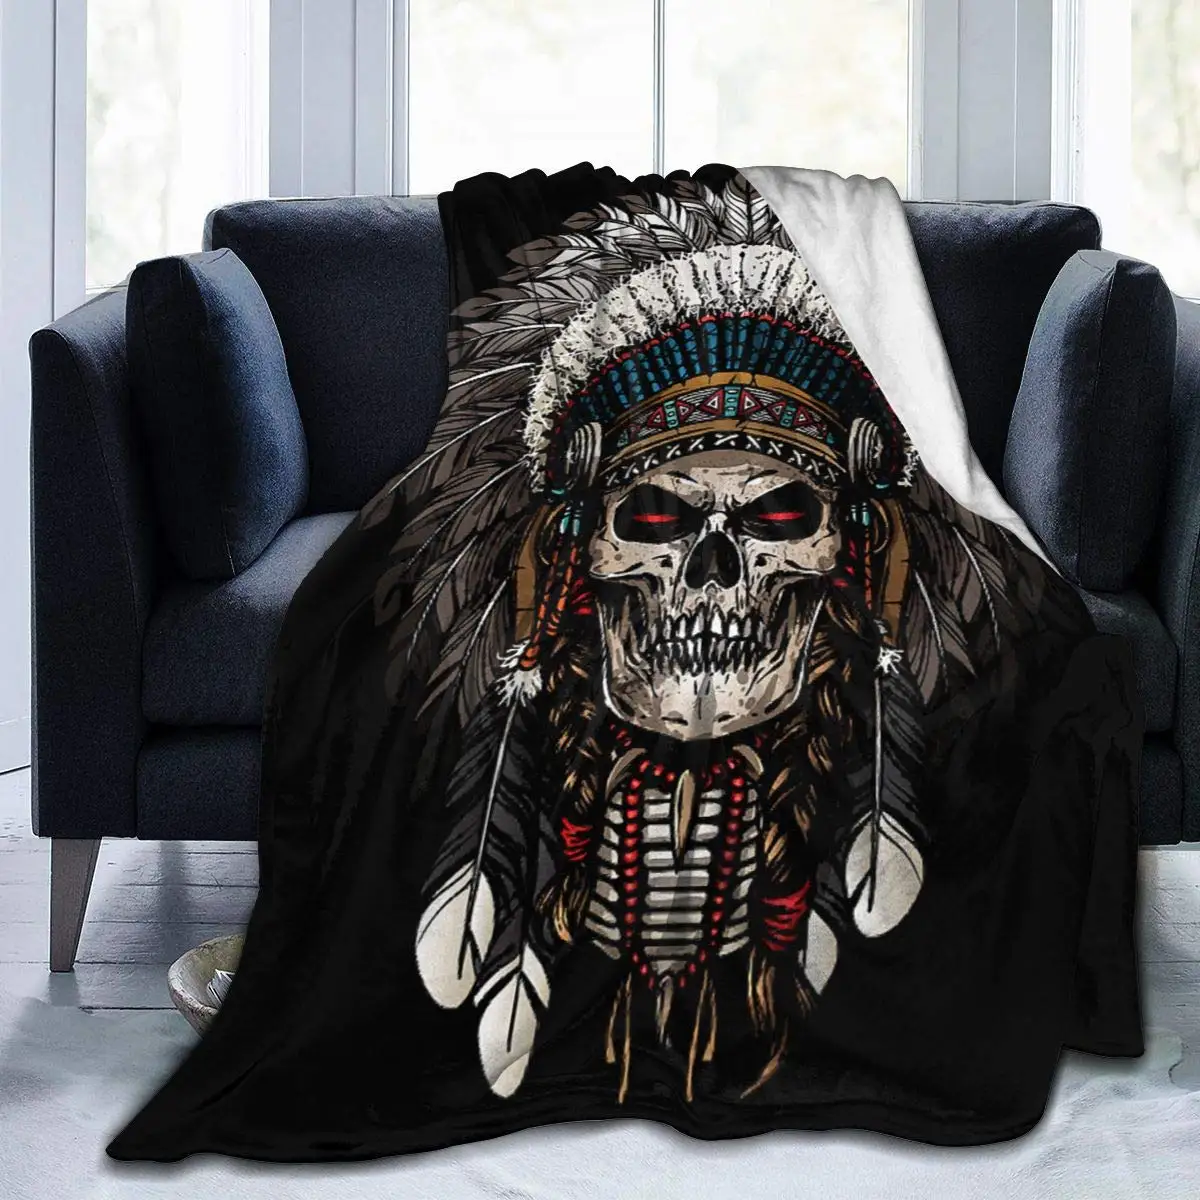 

Ультрамягкое Флисовое одеяло Warrior-Indian-Skull, покрывало для кровати, дивана, гостиной, пикника, подходит для всех сезонов